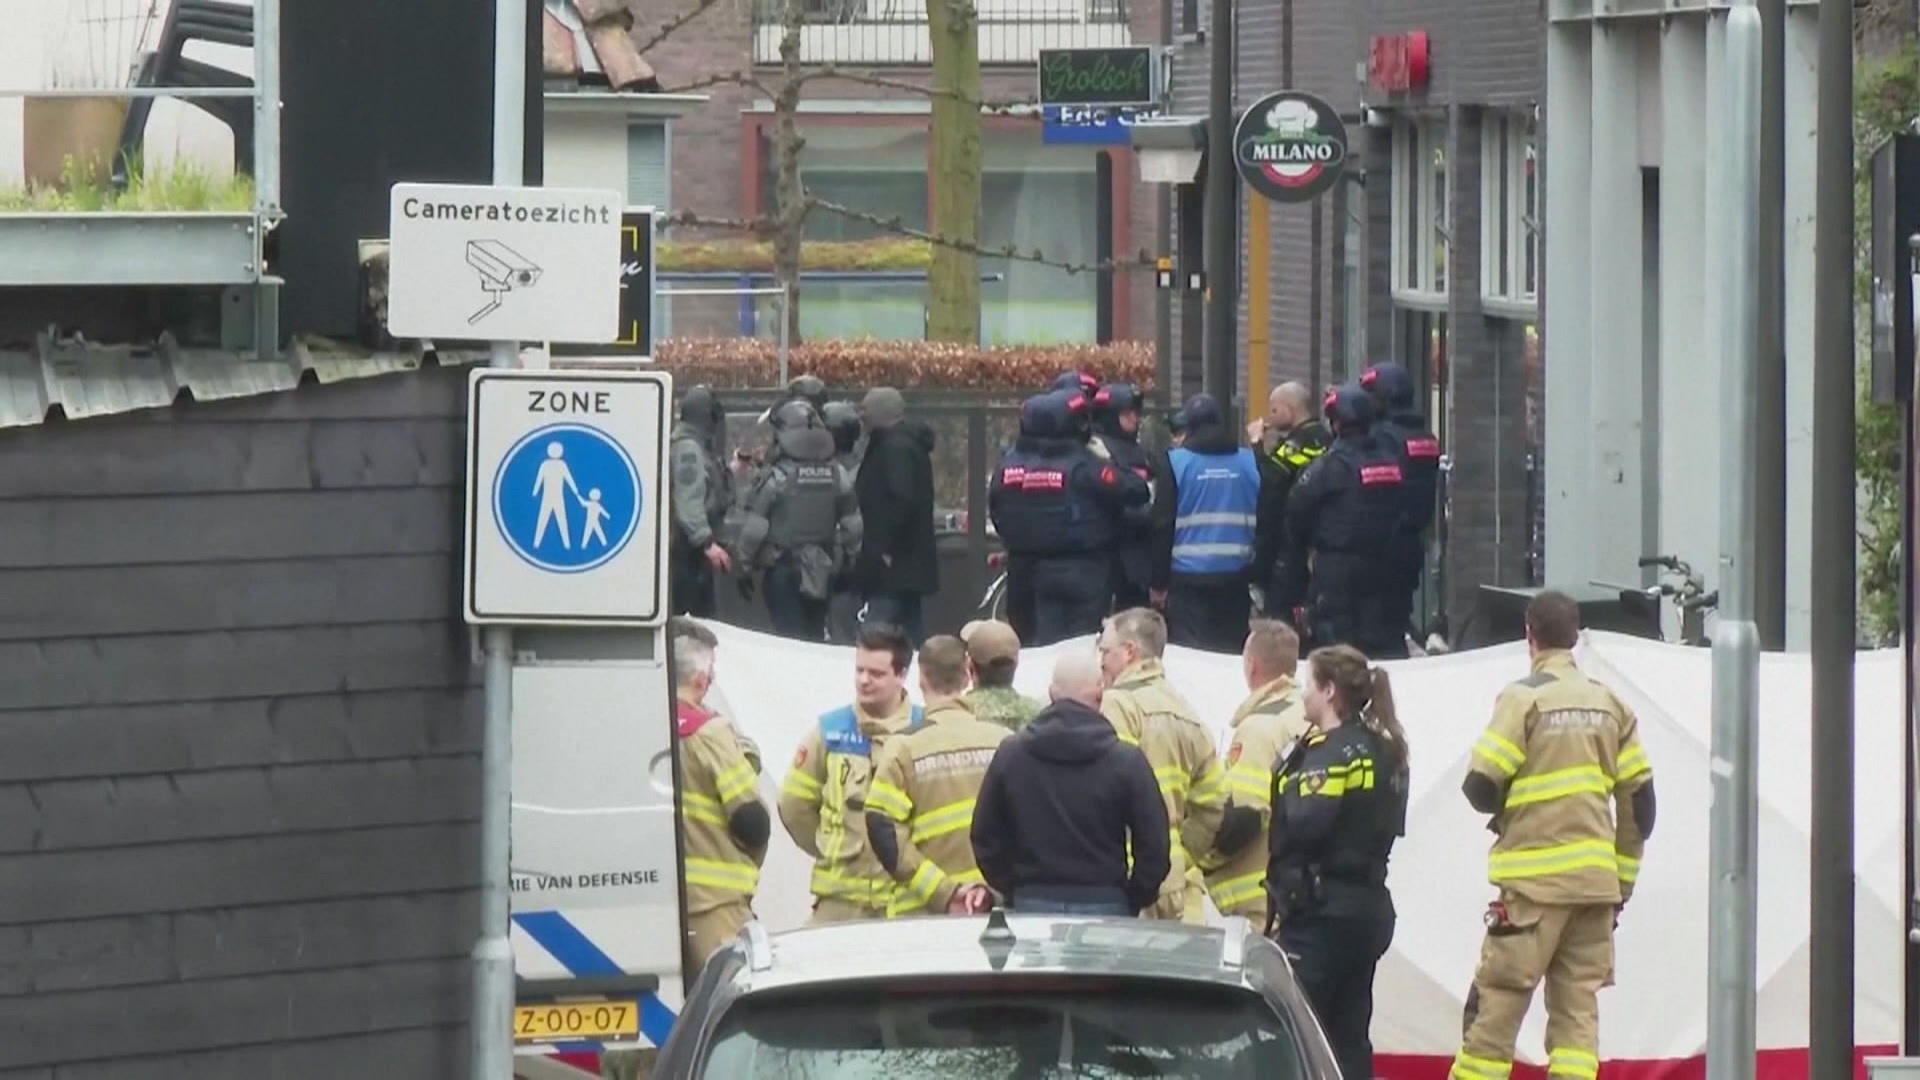 Osoba biorąca zakładników przetrzymuje ludzi jako zakładników w dużym barze w Holandii